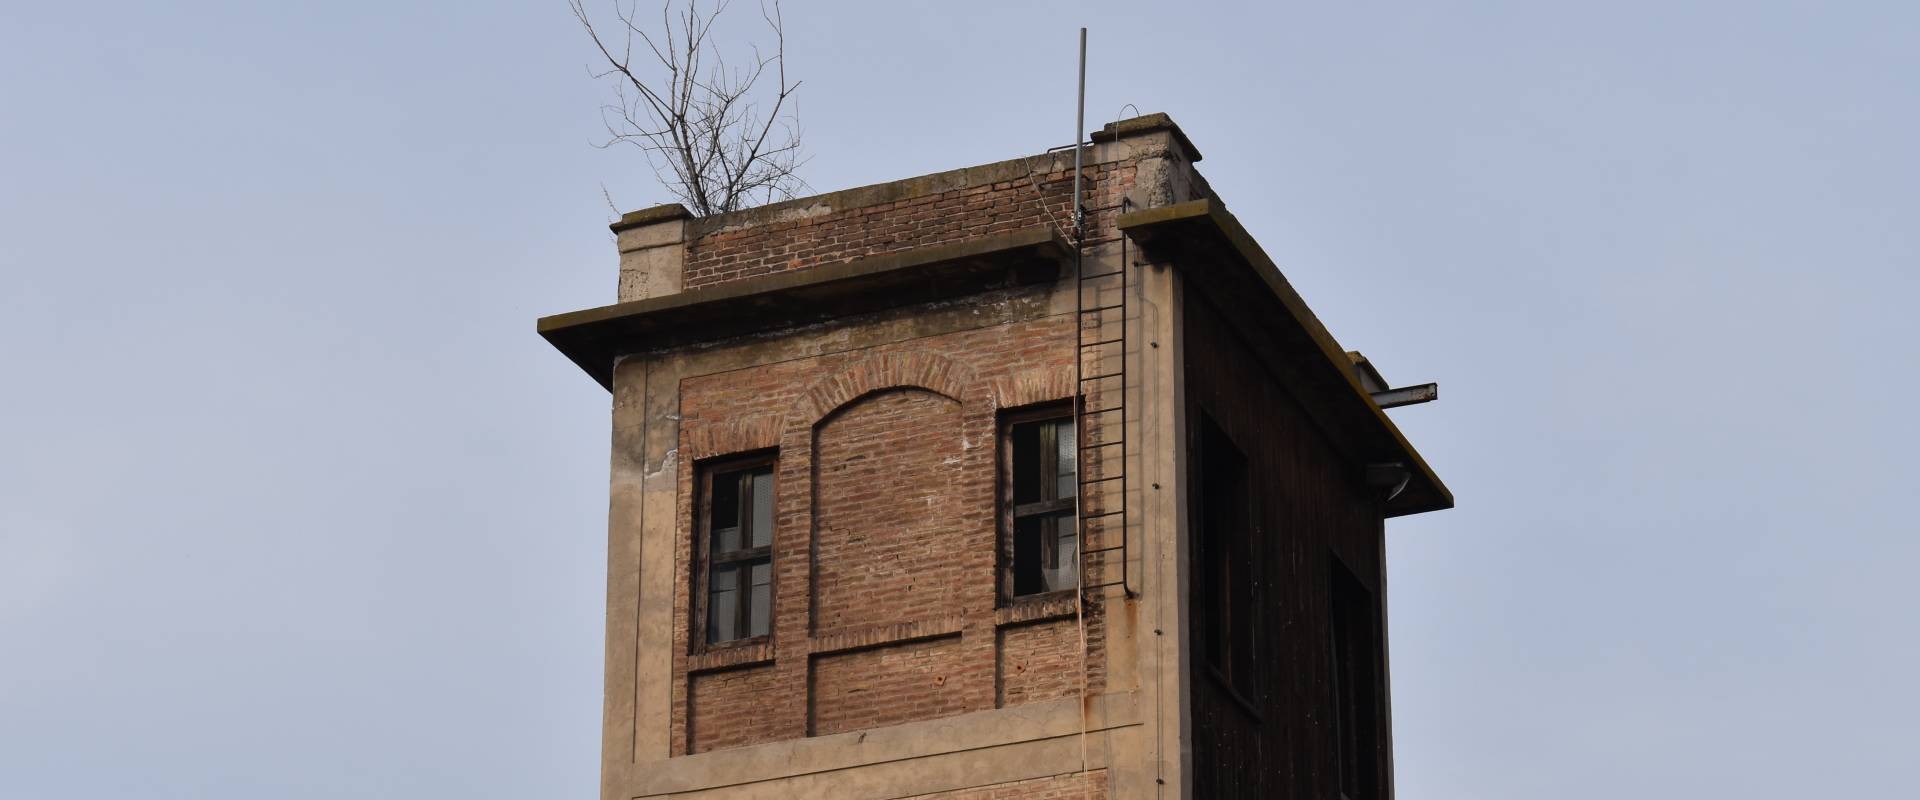 Torre ex comando Provinciale Vigili del Fuoco Ferrara foto di Nicola Quirico